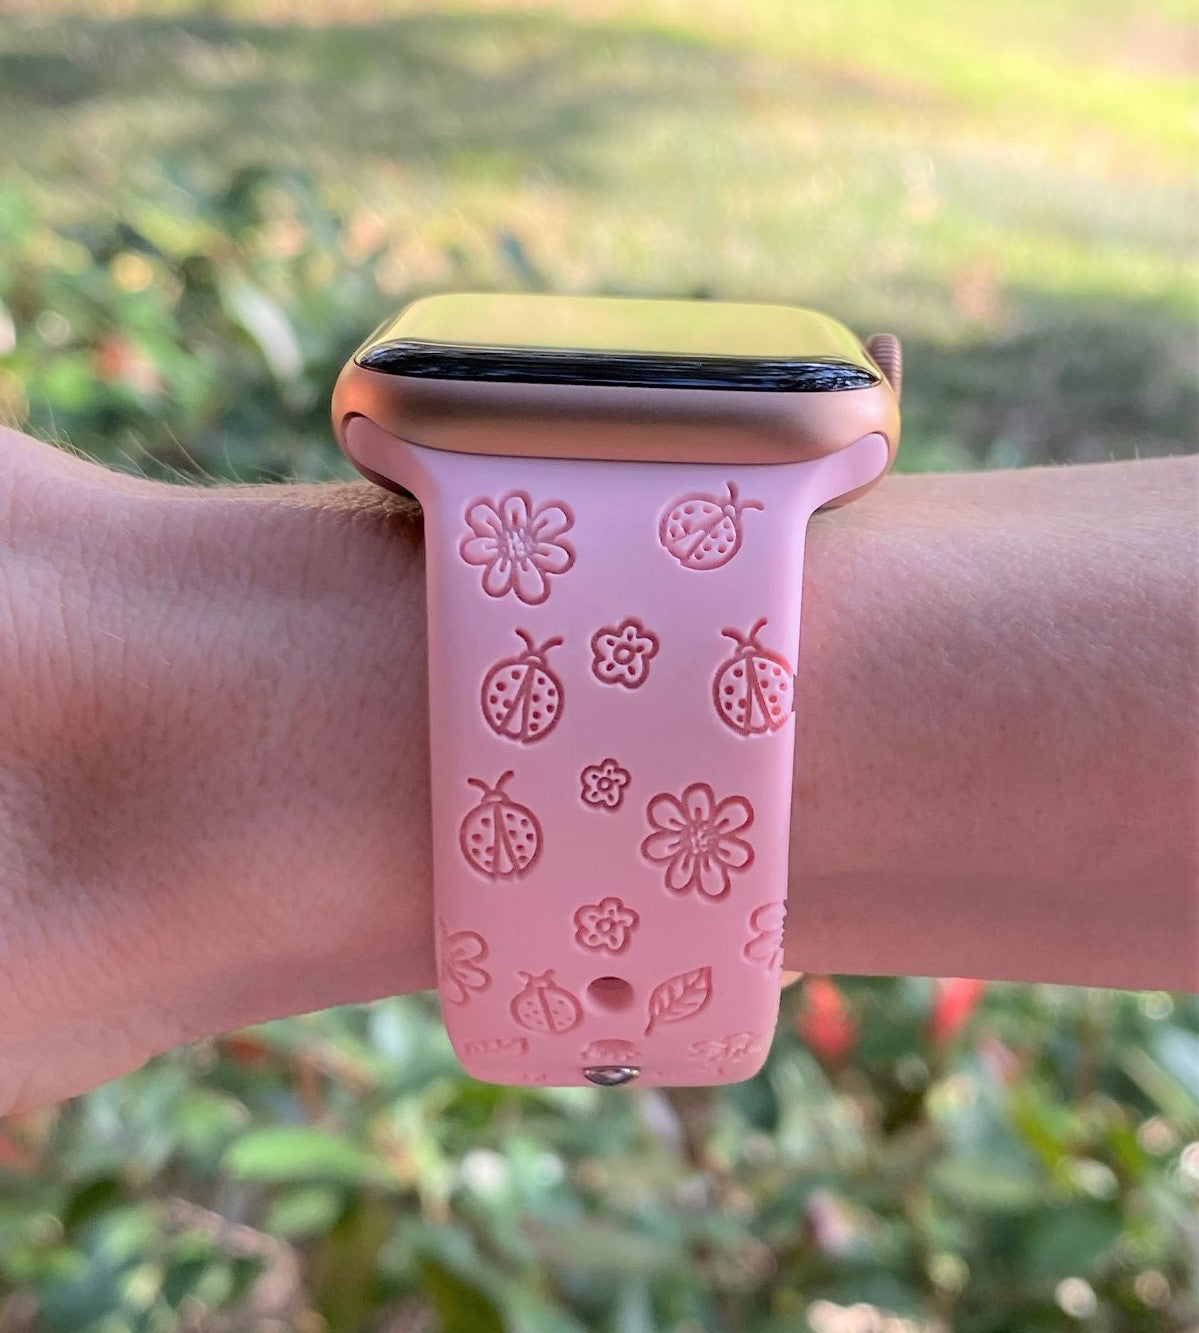 Ladybug Apple Watch Band